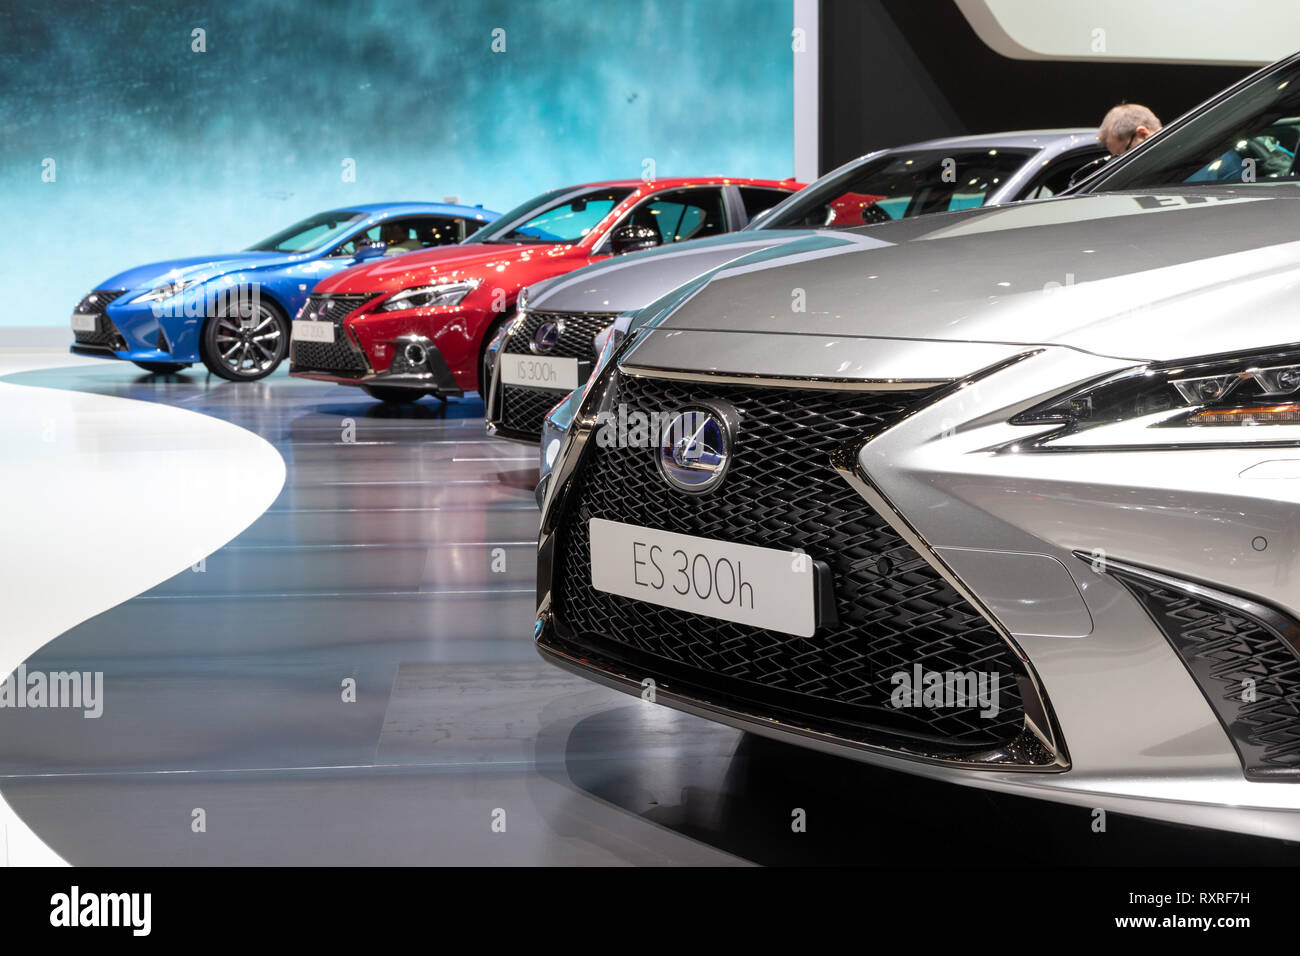 Ginebra, Suiza - Marzo 6, 2019: Lexus coches exhibido en el 89º Salón Internacional del Automóvil de Ginebra. Foto de stock